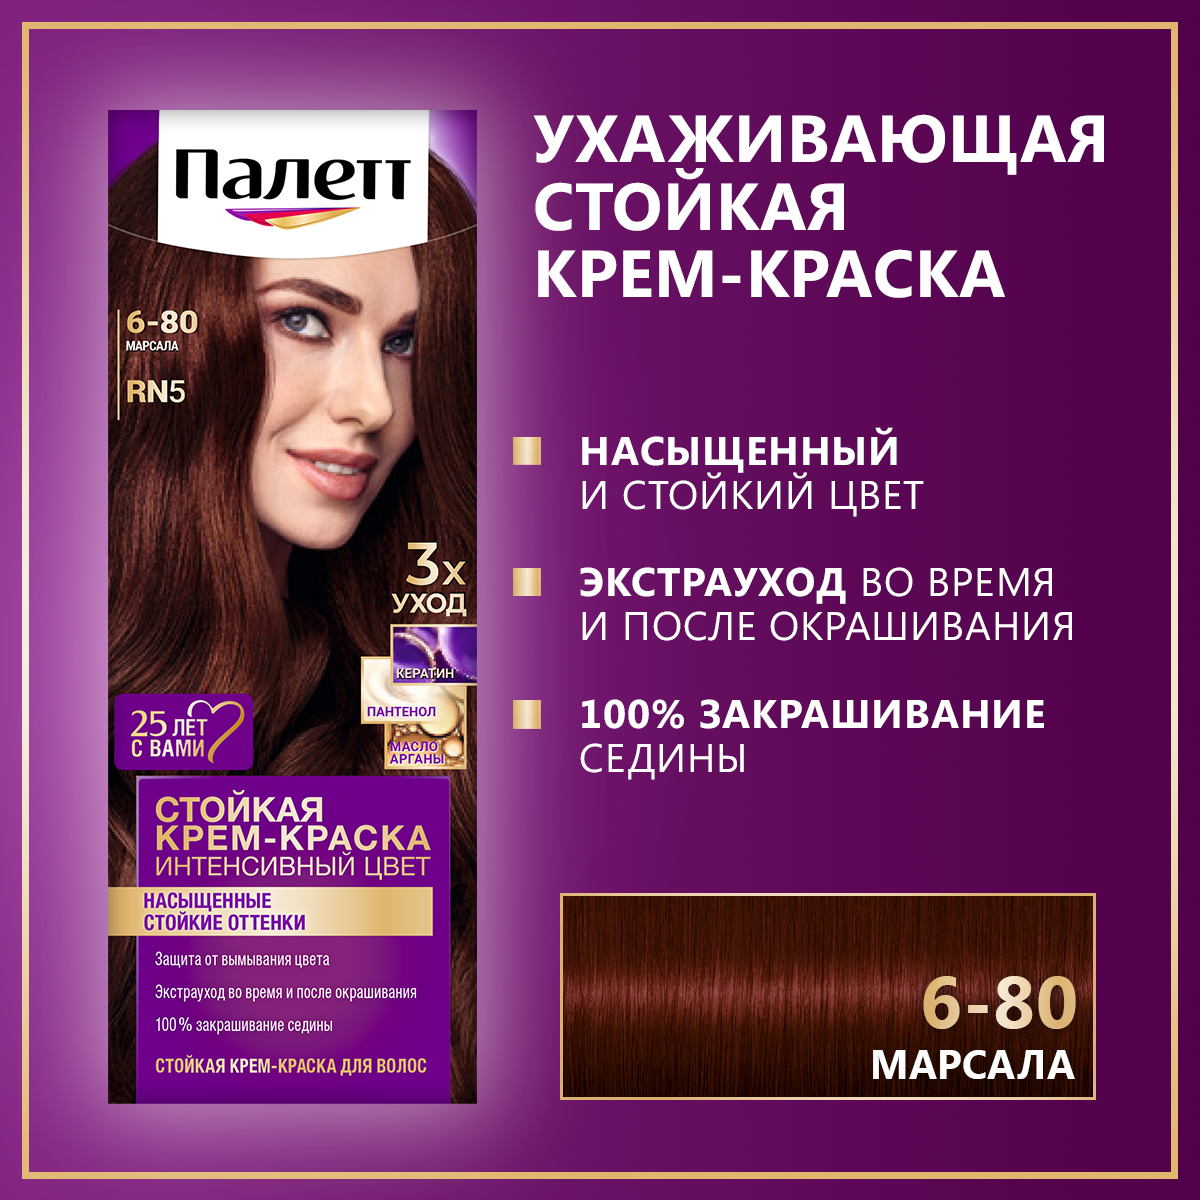 Стойкая крем-краска для волос Палетт Интенсивный цвет 6-80 (RN5) Марсала, 110 мл краска для волос icc 6 80 rn5 марсала palette палетт 110мл